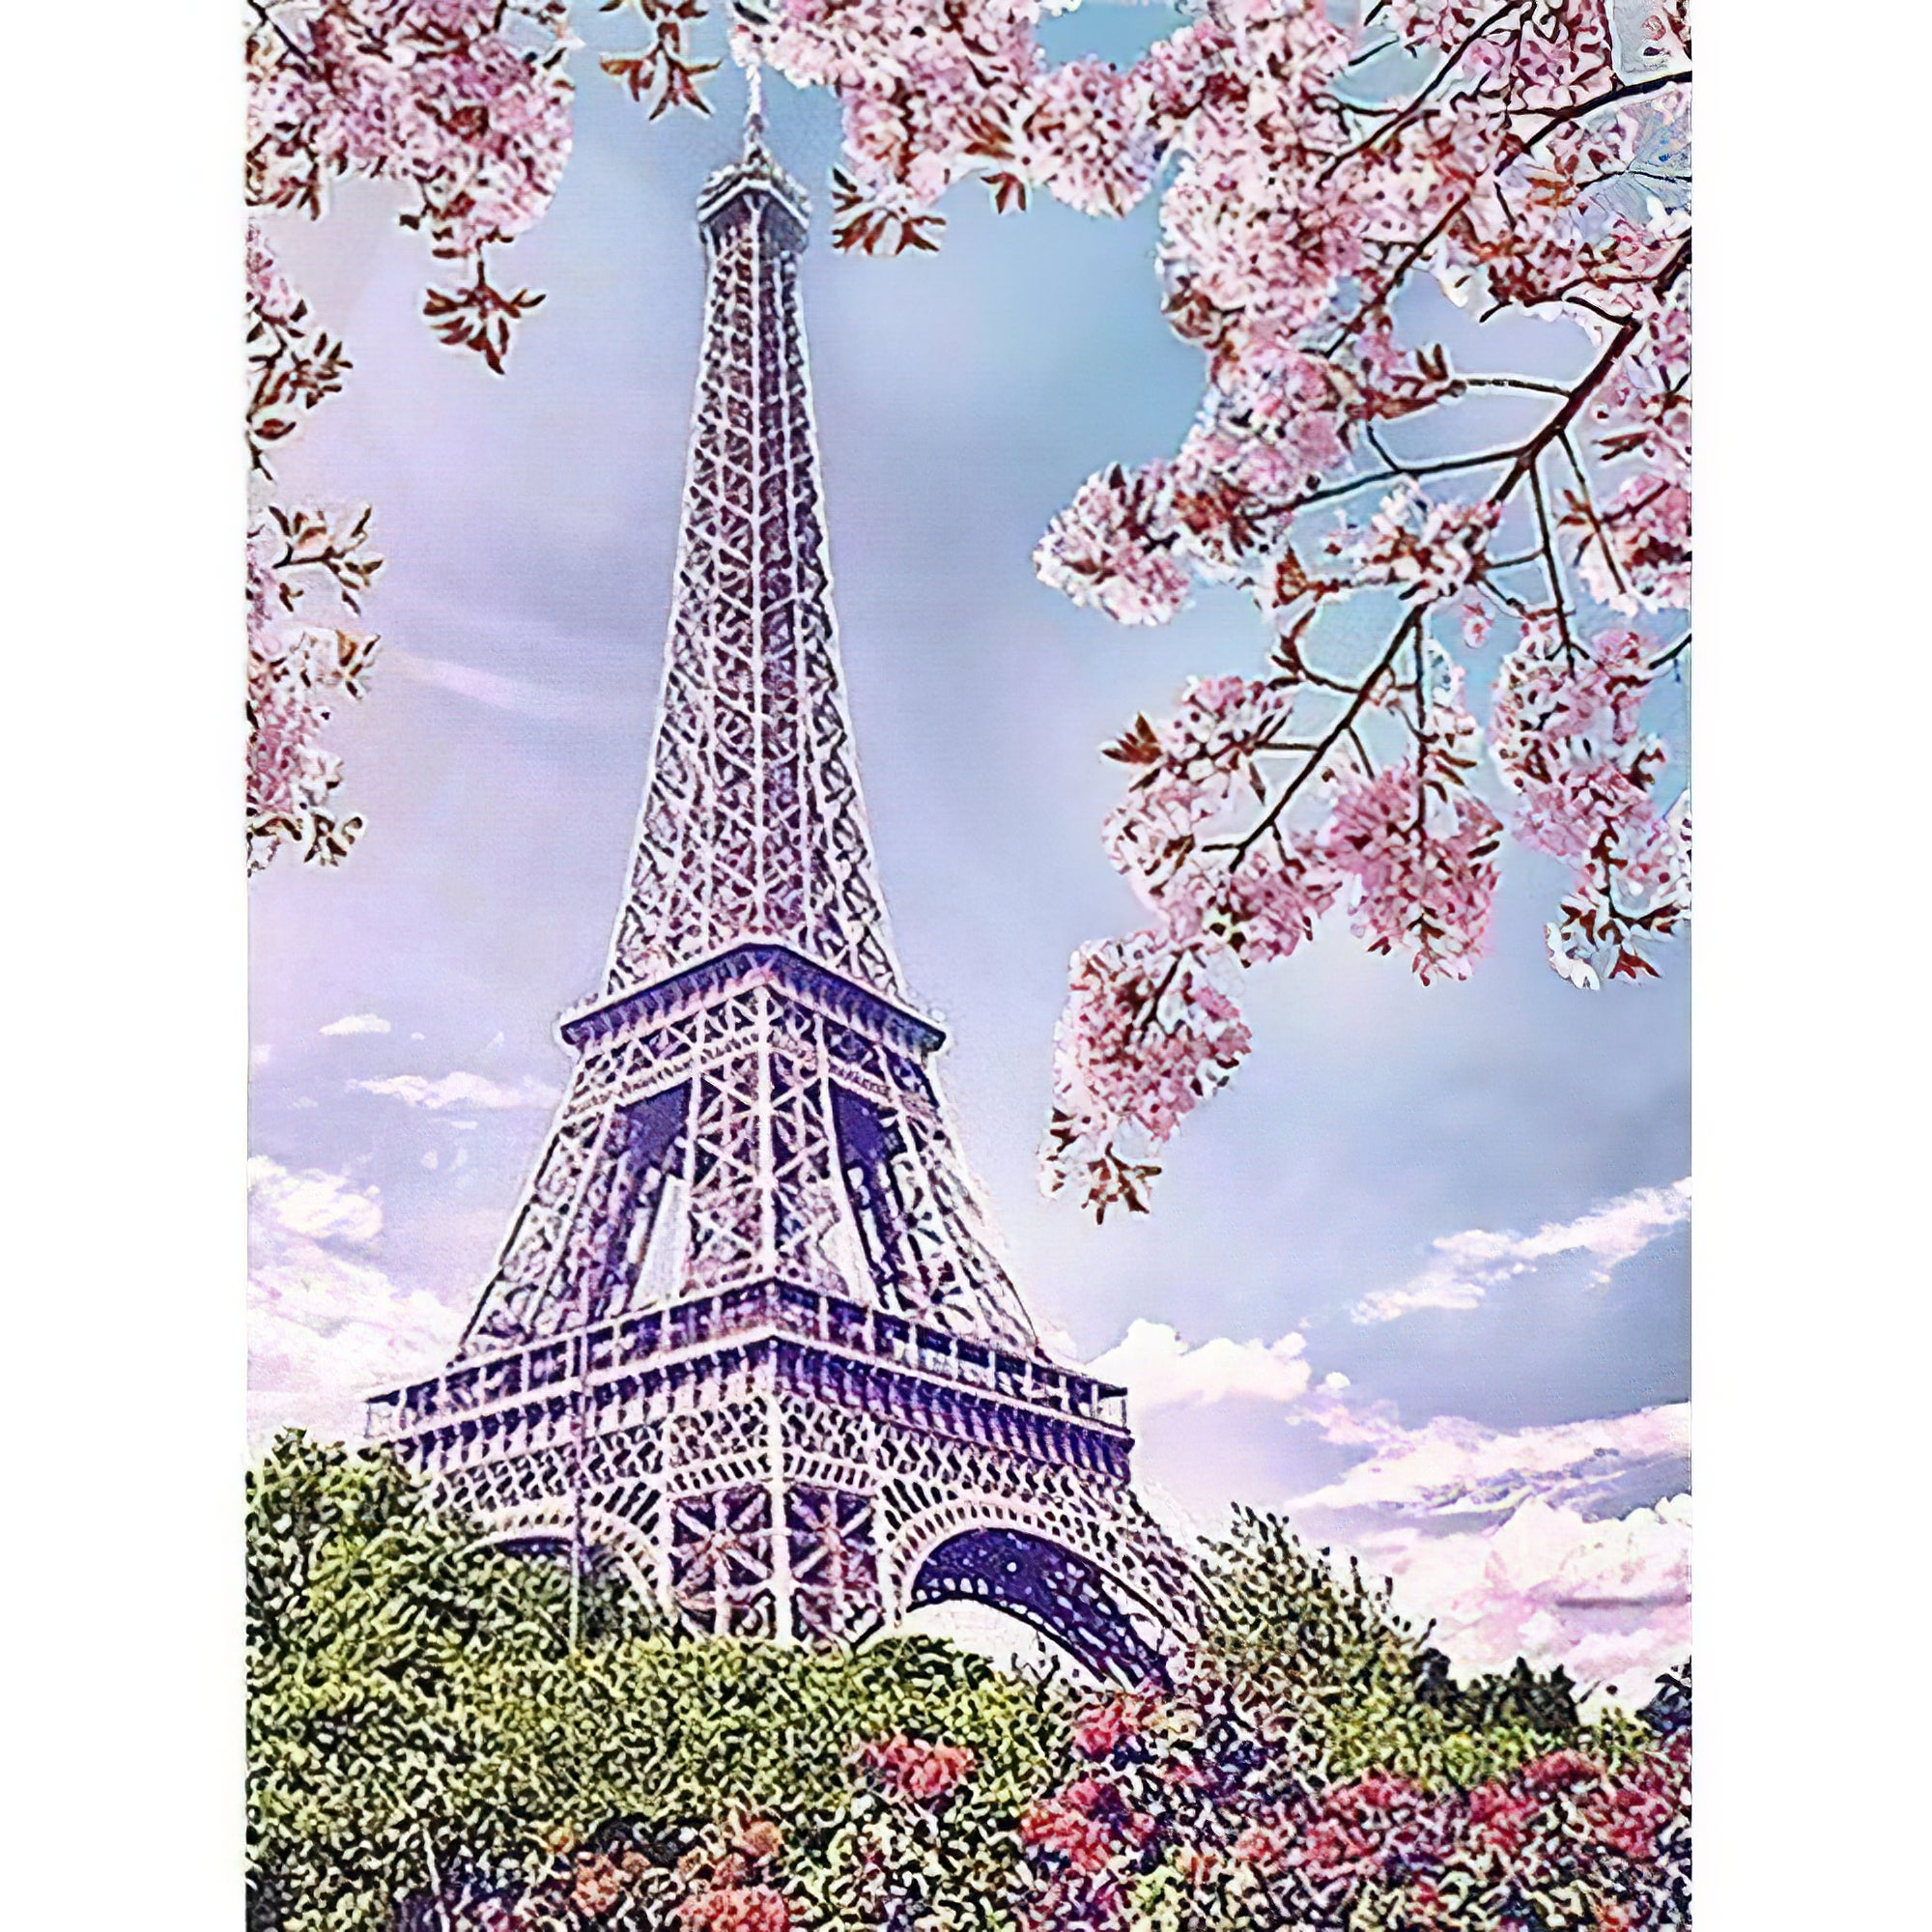 Fleurs de cerisier avec tour Eiffel